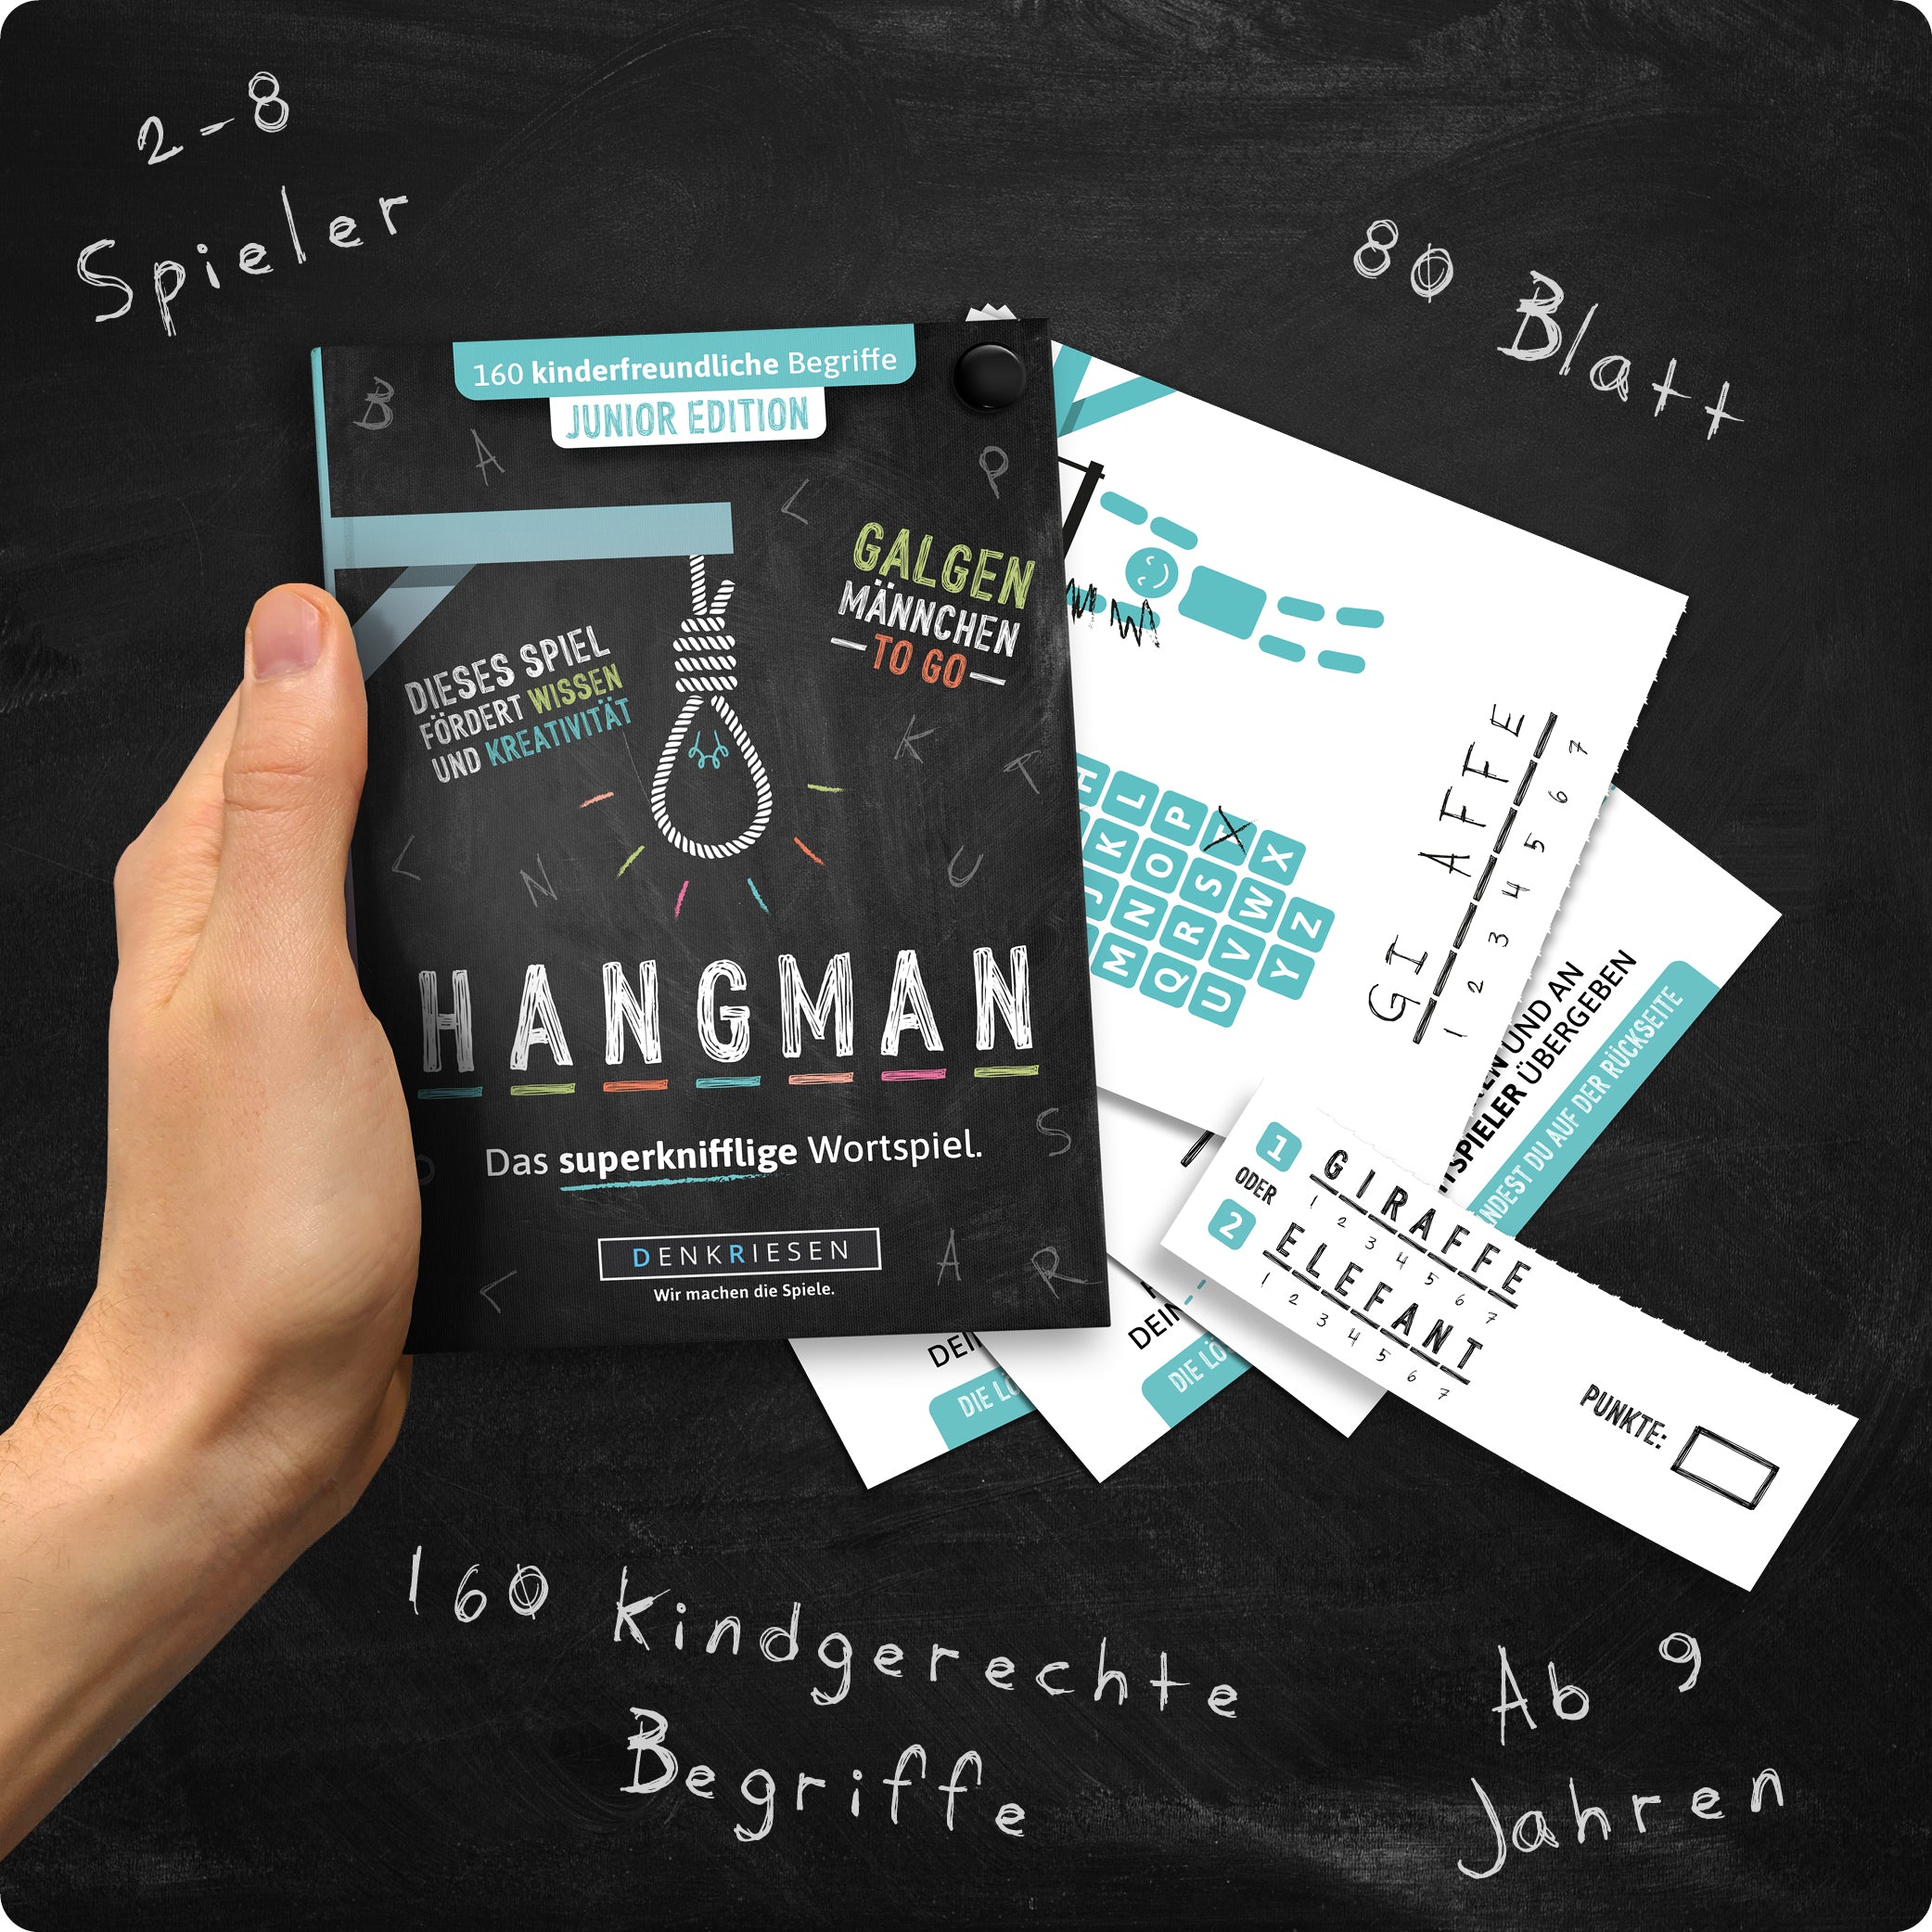 HANGMAN® | Junior Edition – "Das superknifflige Wortspiel."